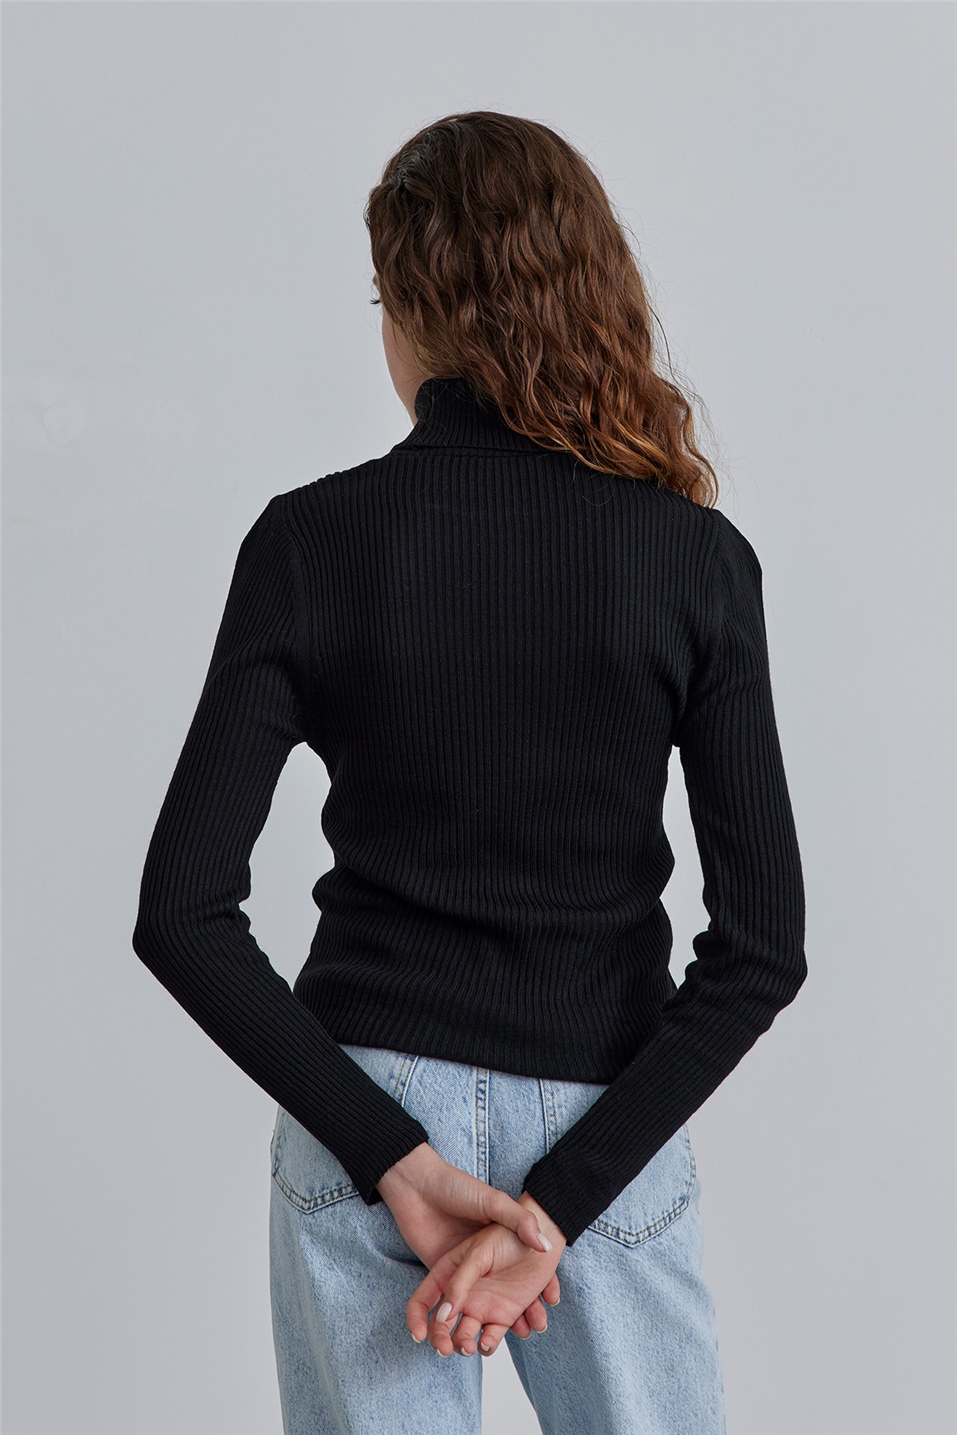 Black Turtleneck Knitwear Sweater